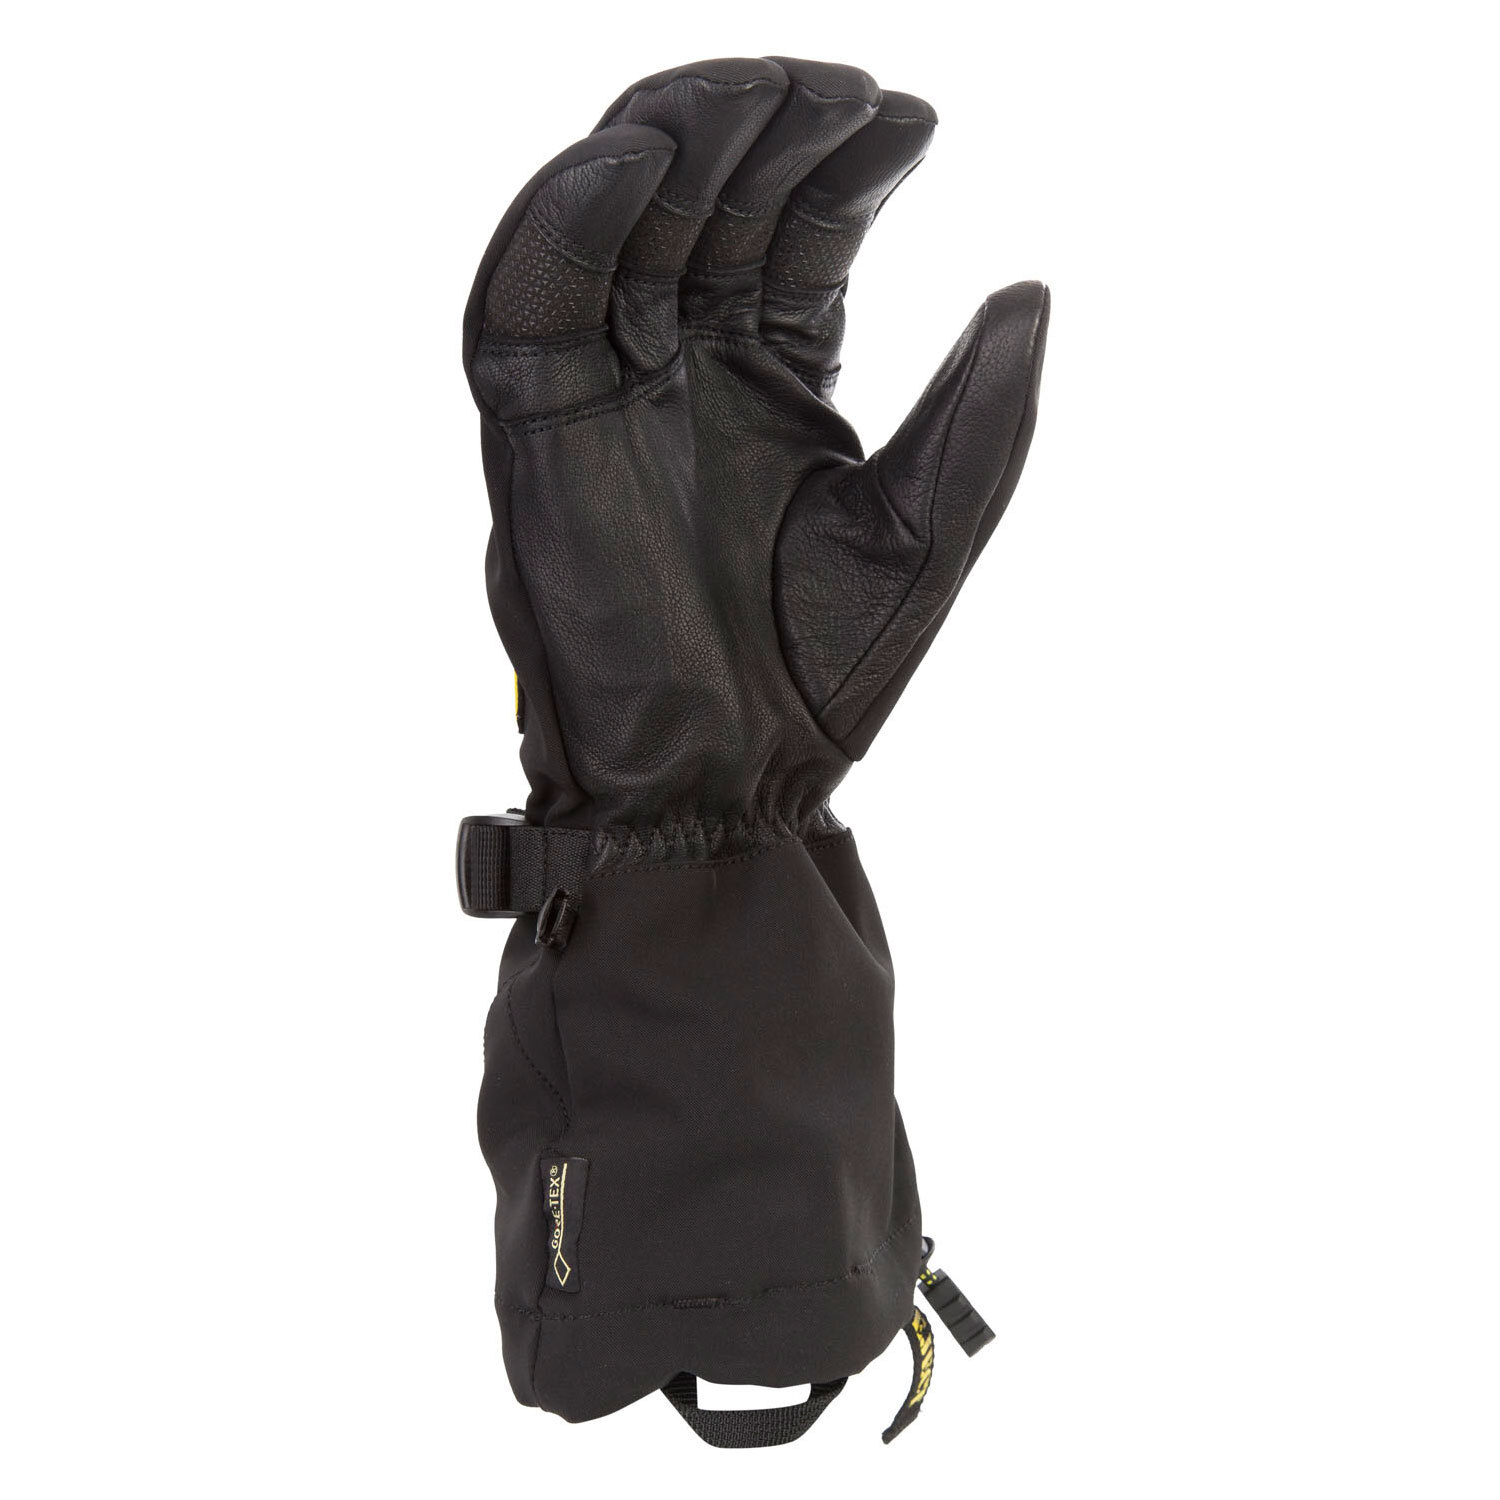 Togwotee Glove SM Black Asphalt